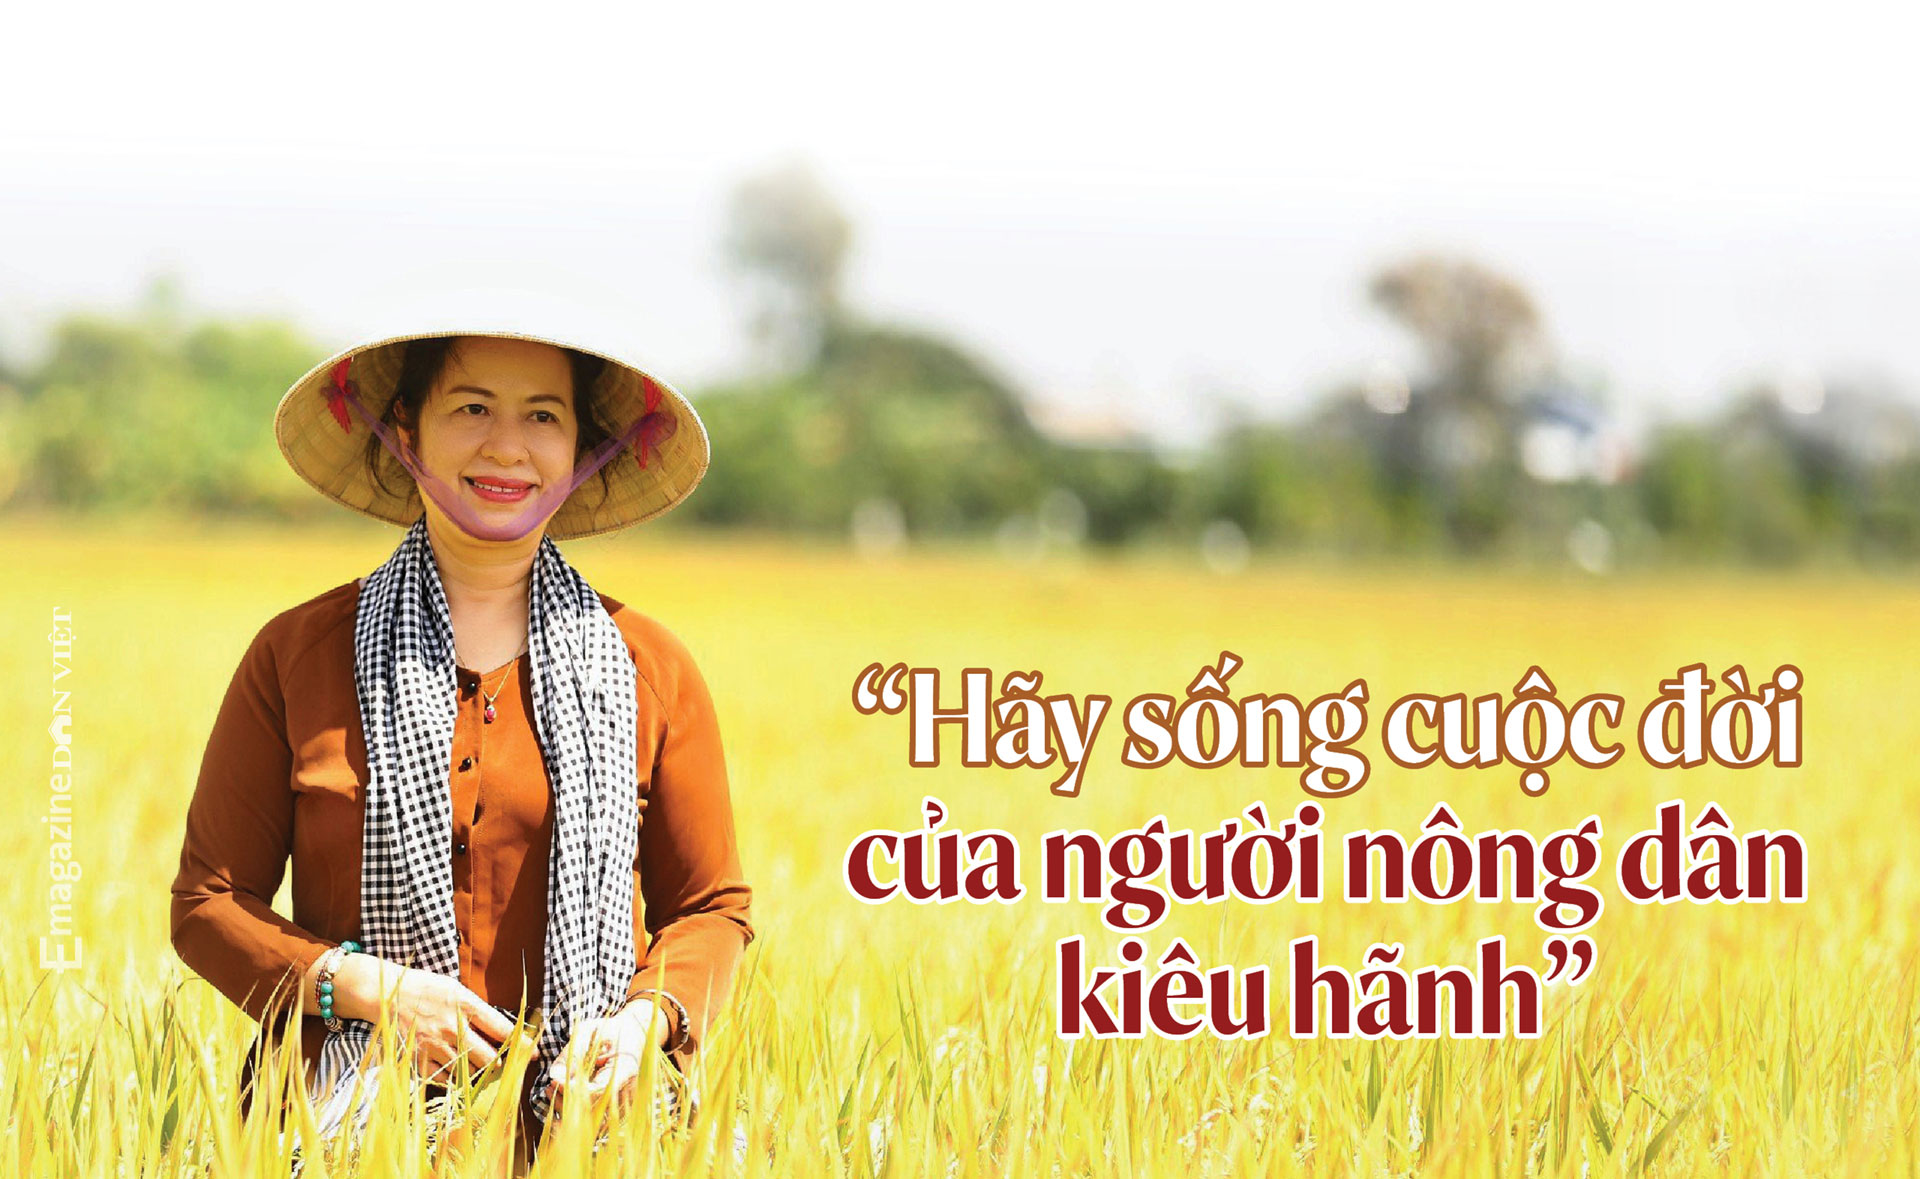 Bà Nguyễn Thị Phượng, Phó Tổng Giám đốc Agribank: “Chúng tôi sinh ra để phục vụ nông dân” - Ảnh 2.